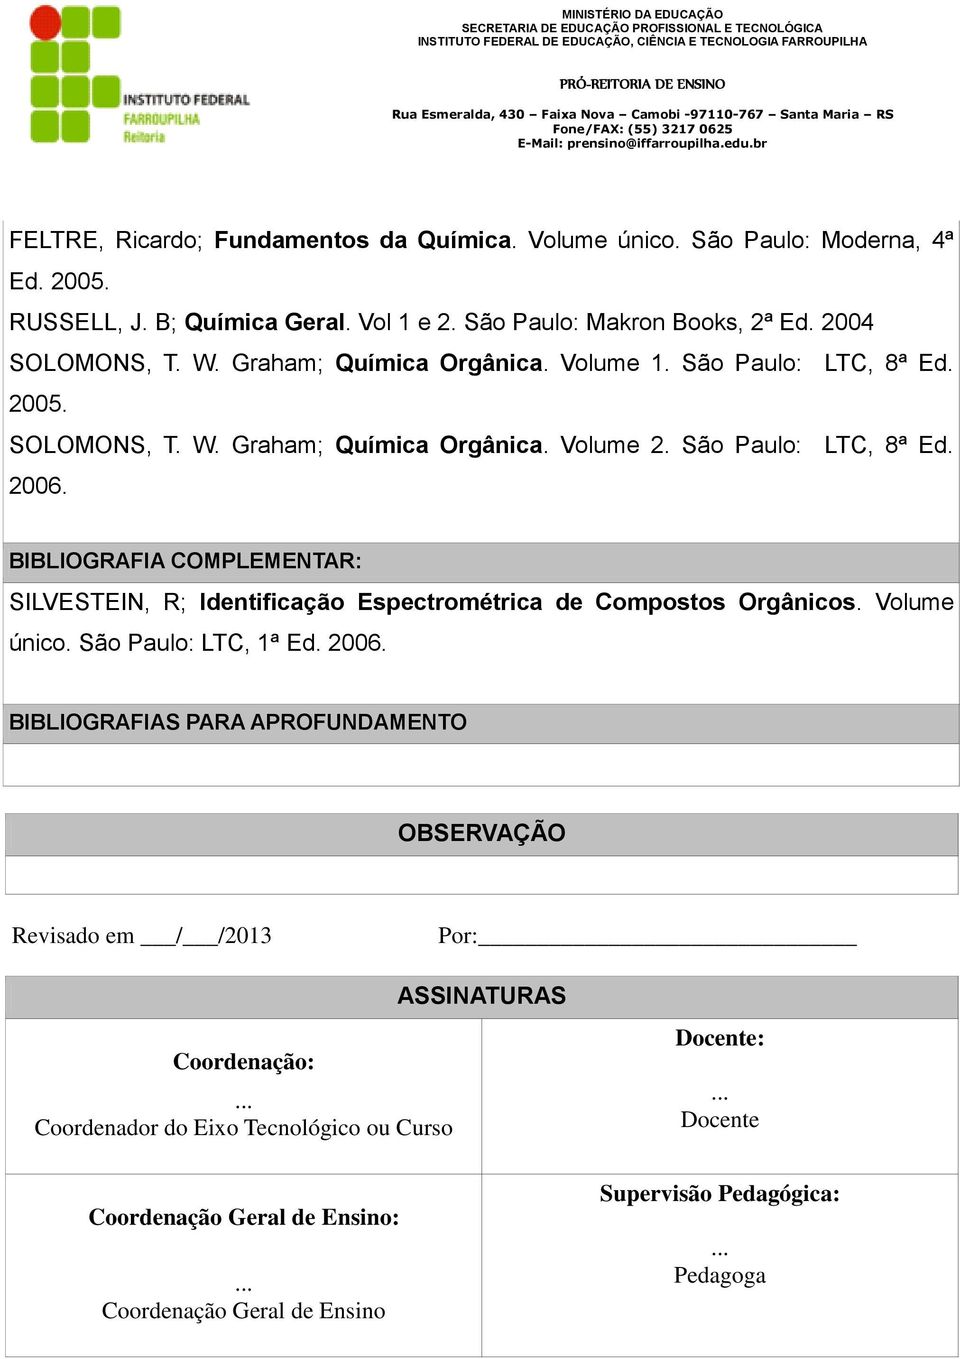 BIBLIOGRAFIA COMPLEMENTAR: SILVESTEIN, R; Identificação Espectrométrica de Compostos Orgânicos. Volume único. São Paulo: LTC, 1ª Ed. 2006.